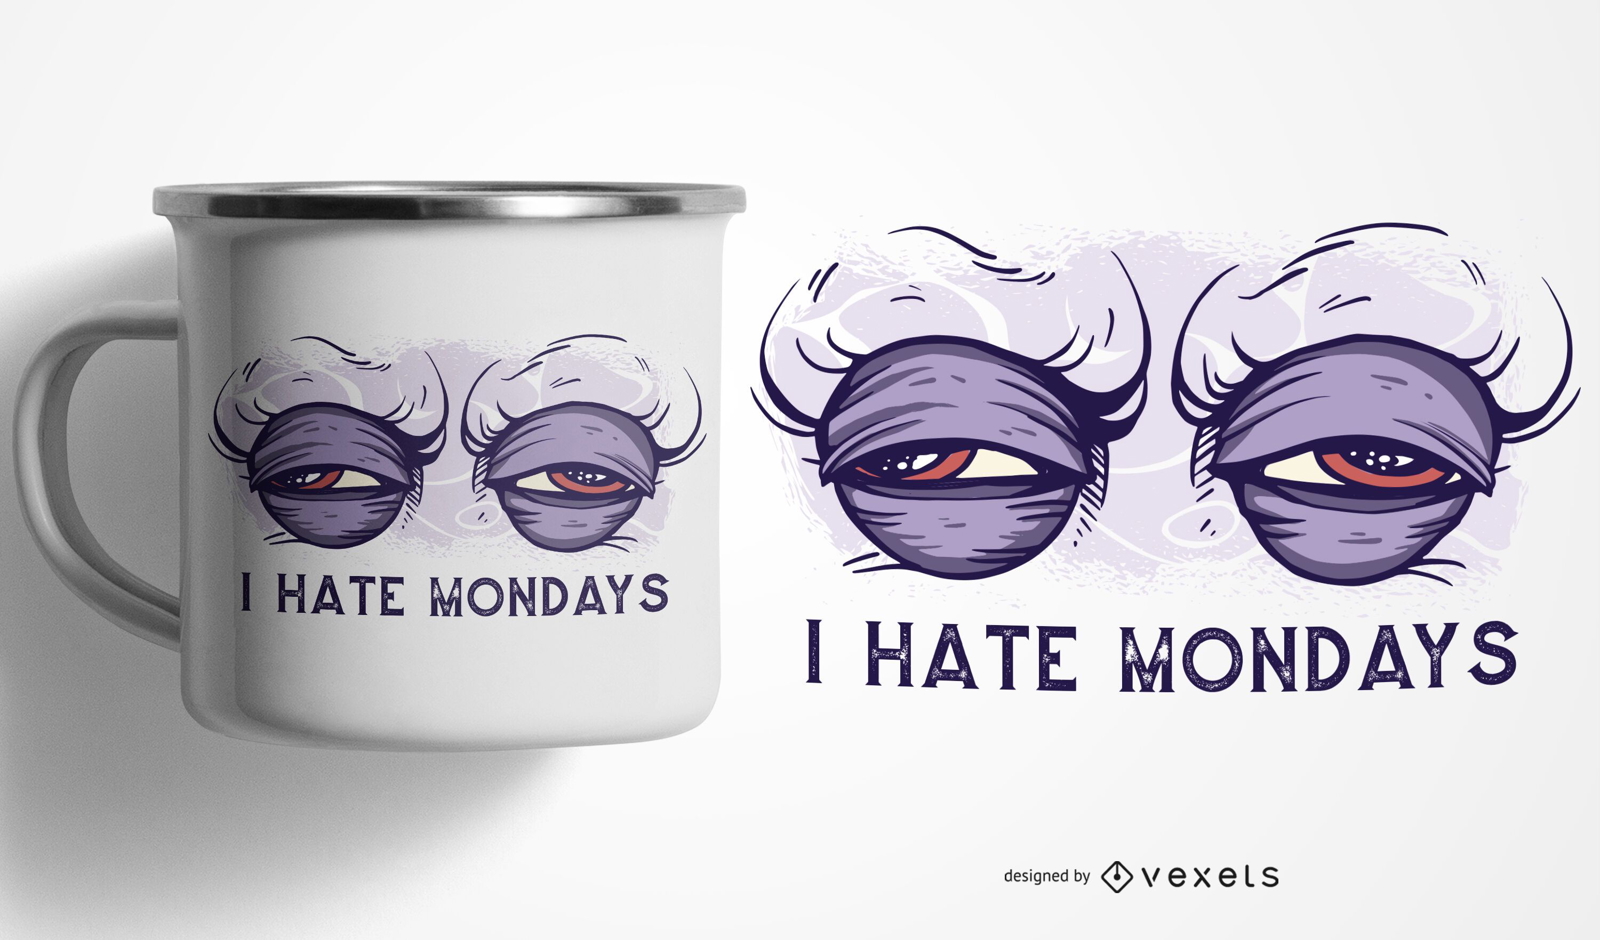 I hate mondays mug design